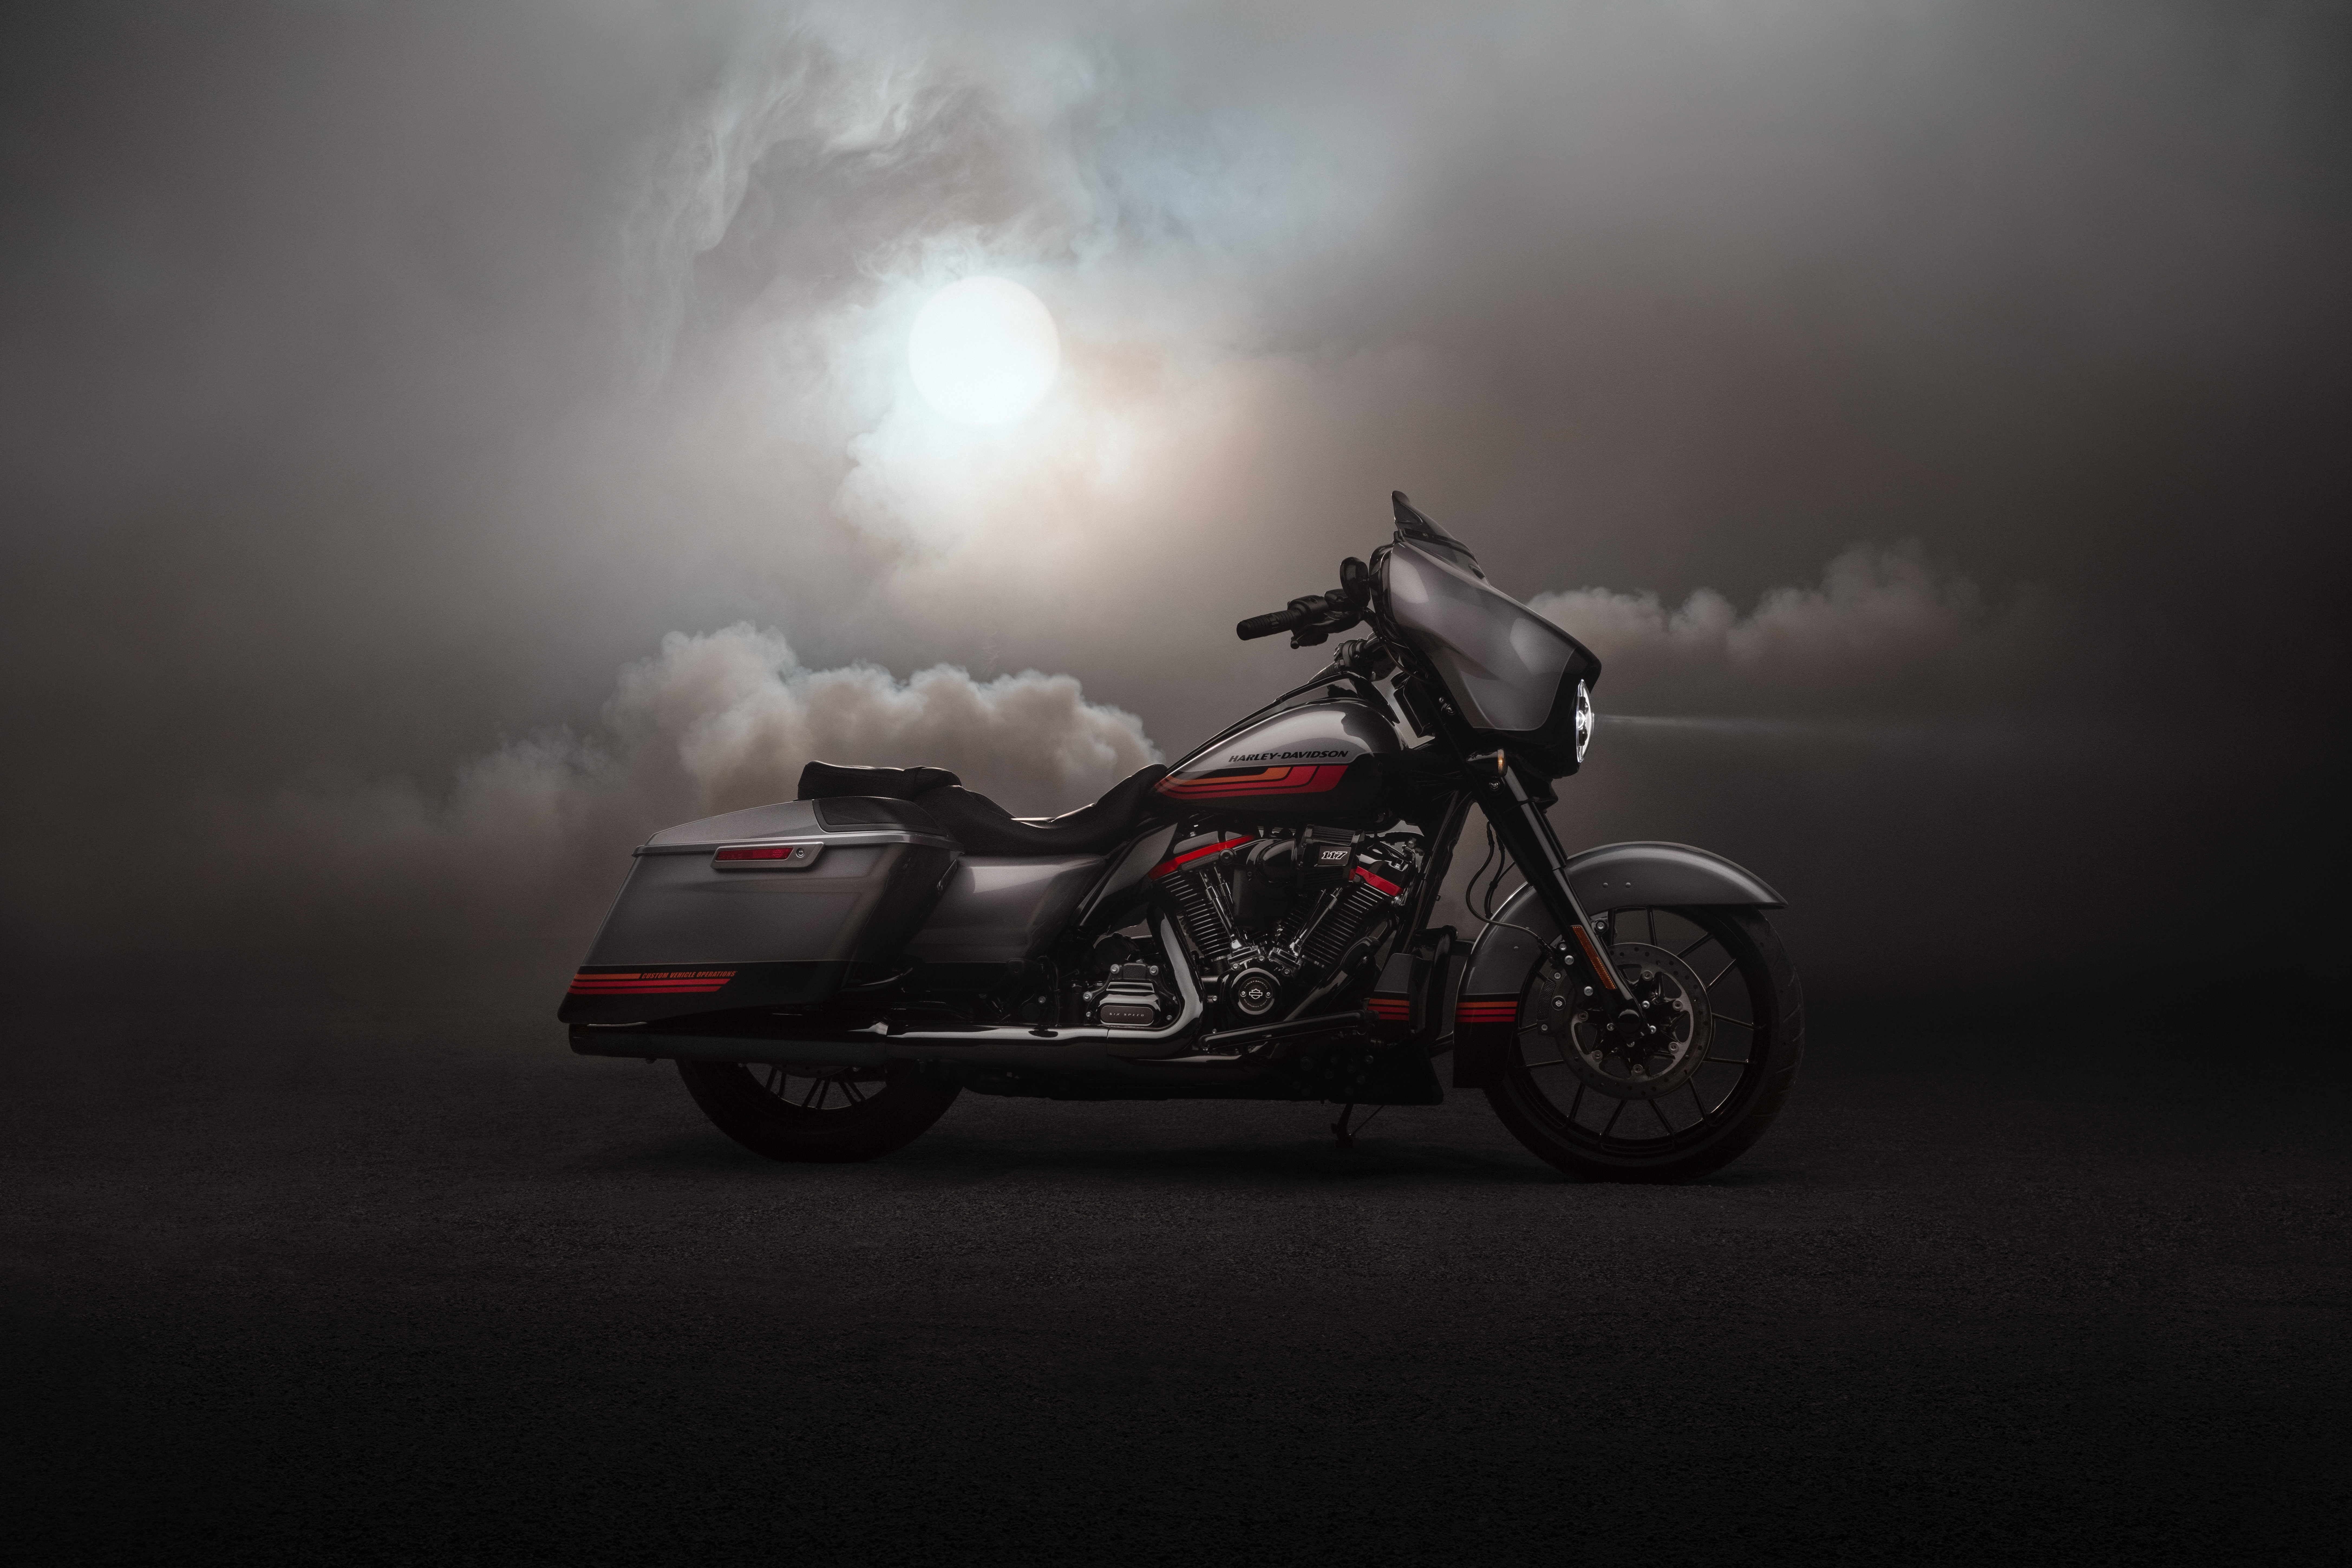 2019 - 2020 Harley-Davidson CVO Street Glide